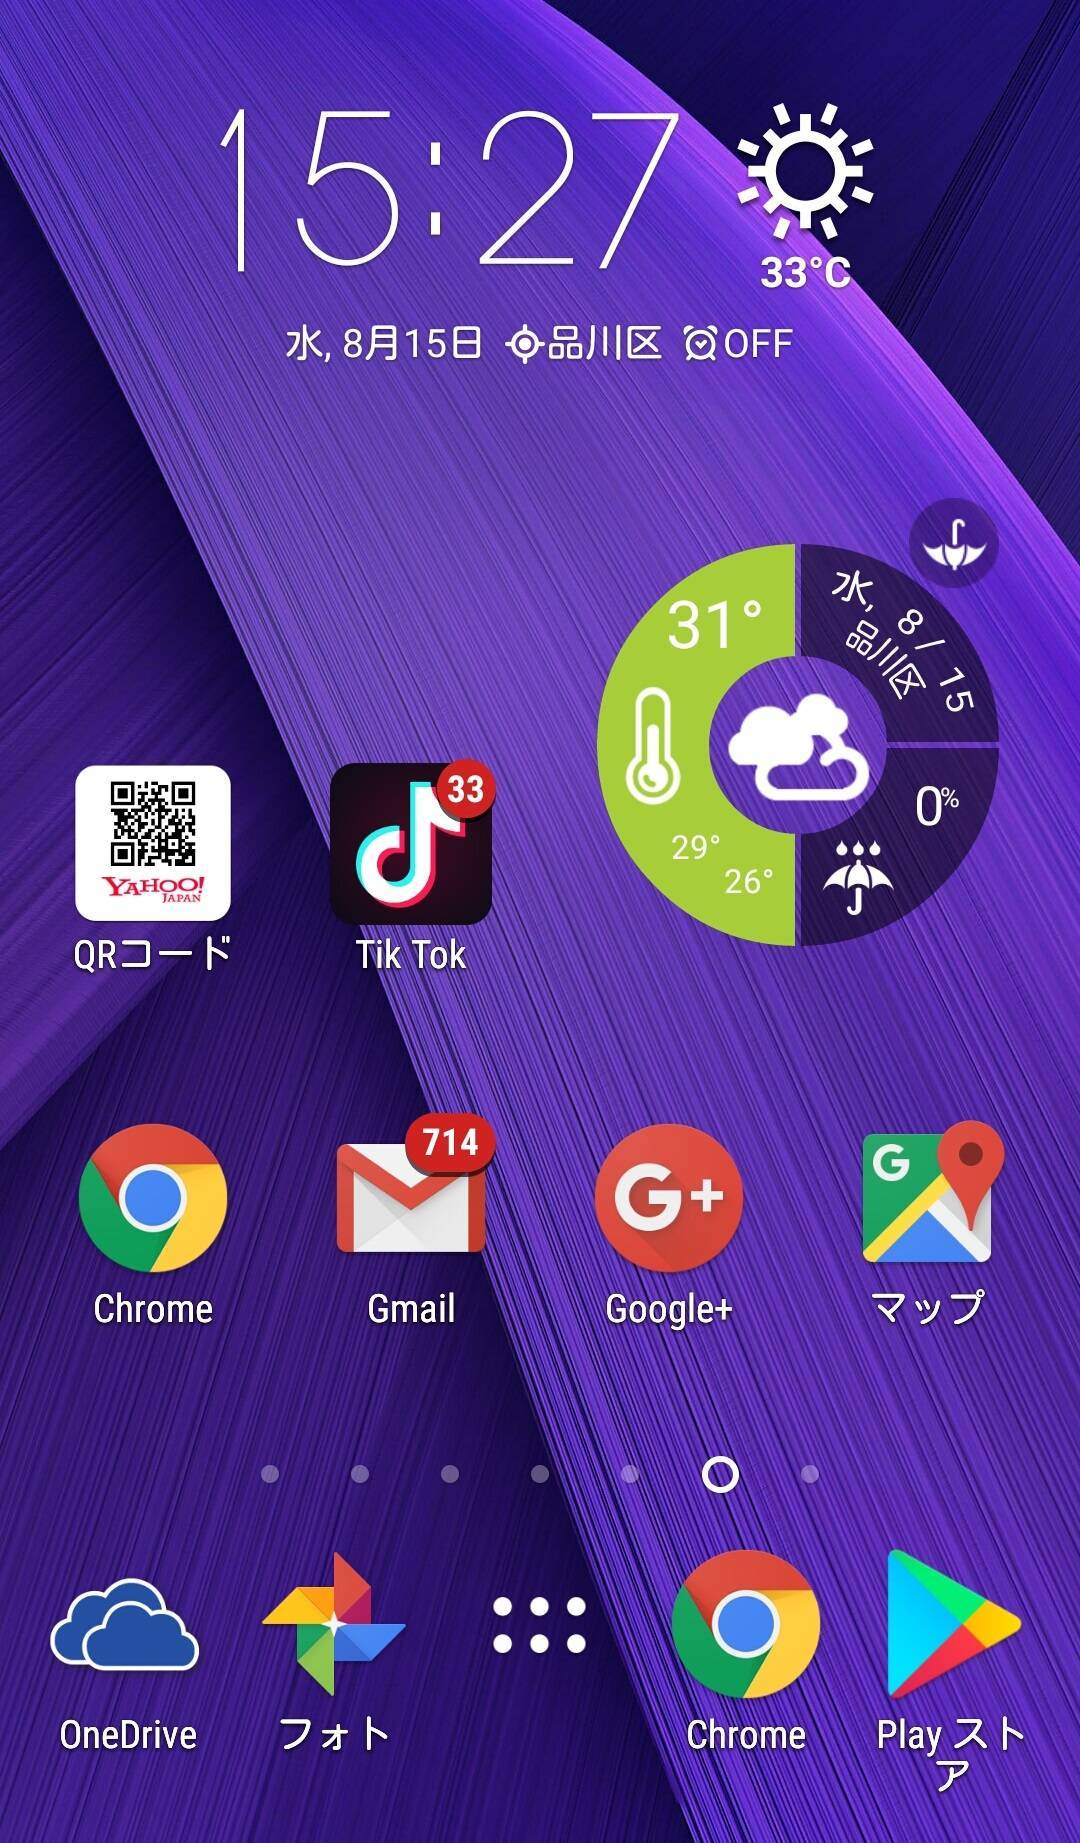 Android天気ウィジェットおすすめ6選 便利でオシャレにホーム画面を大改造の画像 12枚目 Appliv Topics